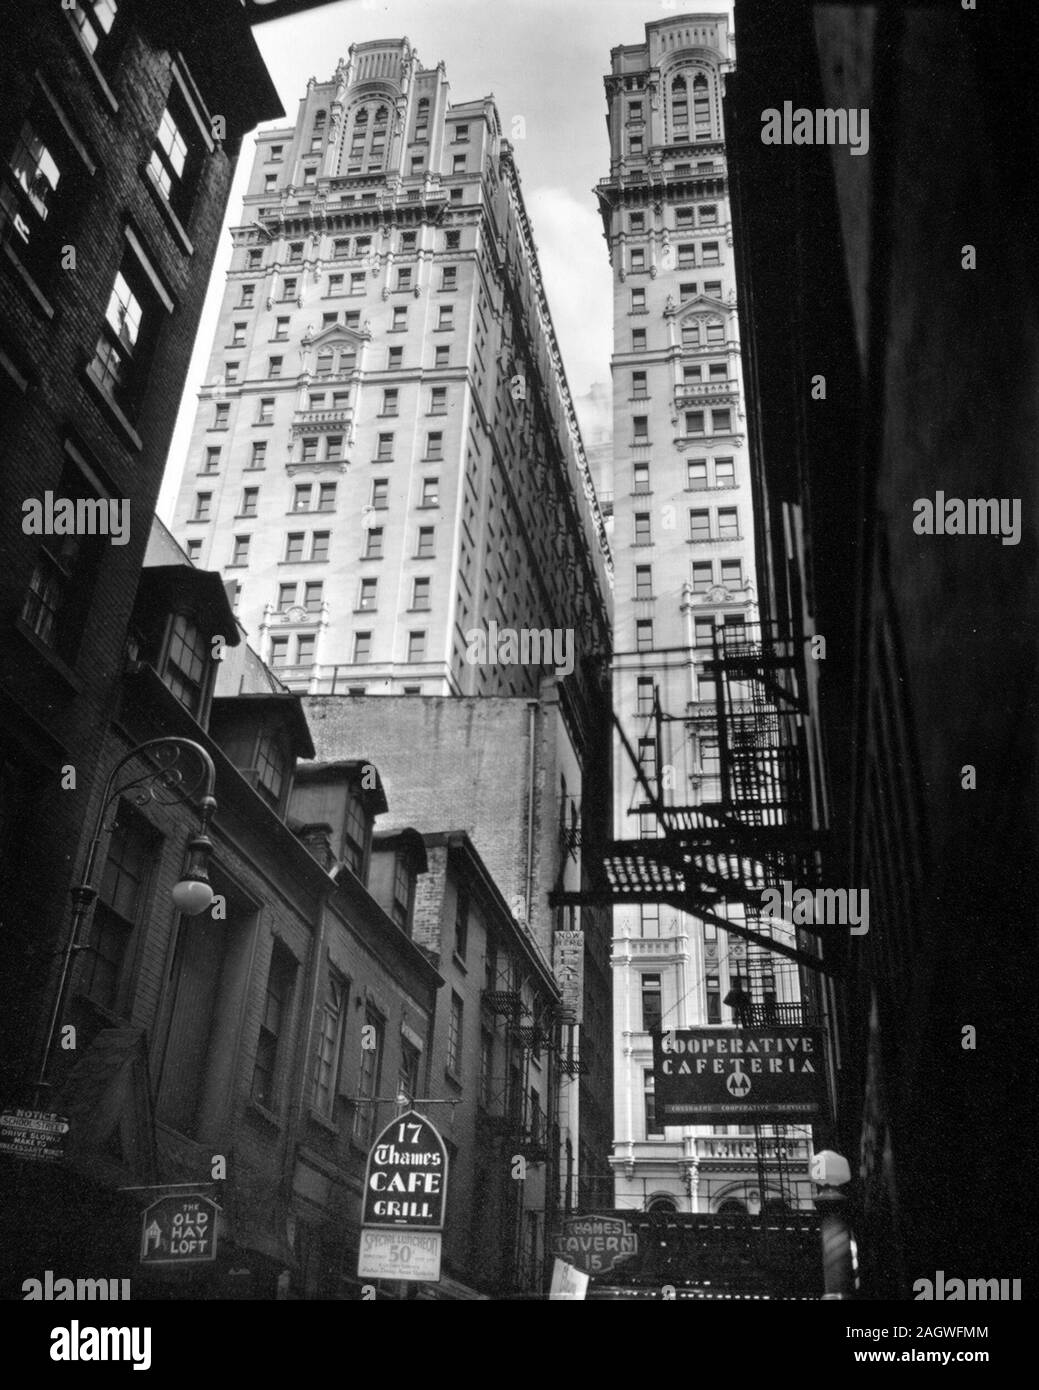 Avis de Thames Street, Manhattan New York Scène de rue. Faible, les vieux bâtiments, les panneaux pour Bars, cafétéria, etc. coopérative, lampadaires et firsecapes en premier plan, les immeubles de grande hauteur dans la lumière au-delà de ca. 1938 Banque D'Images